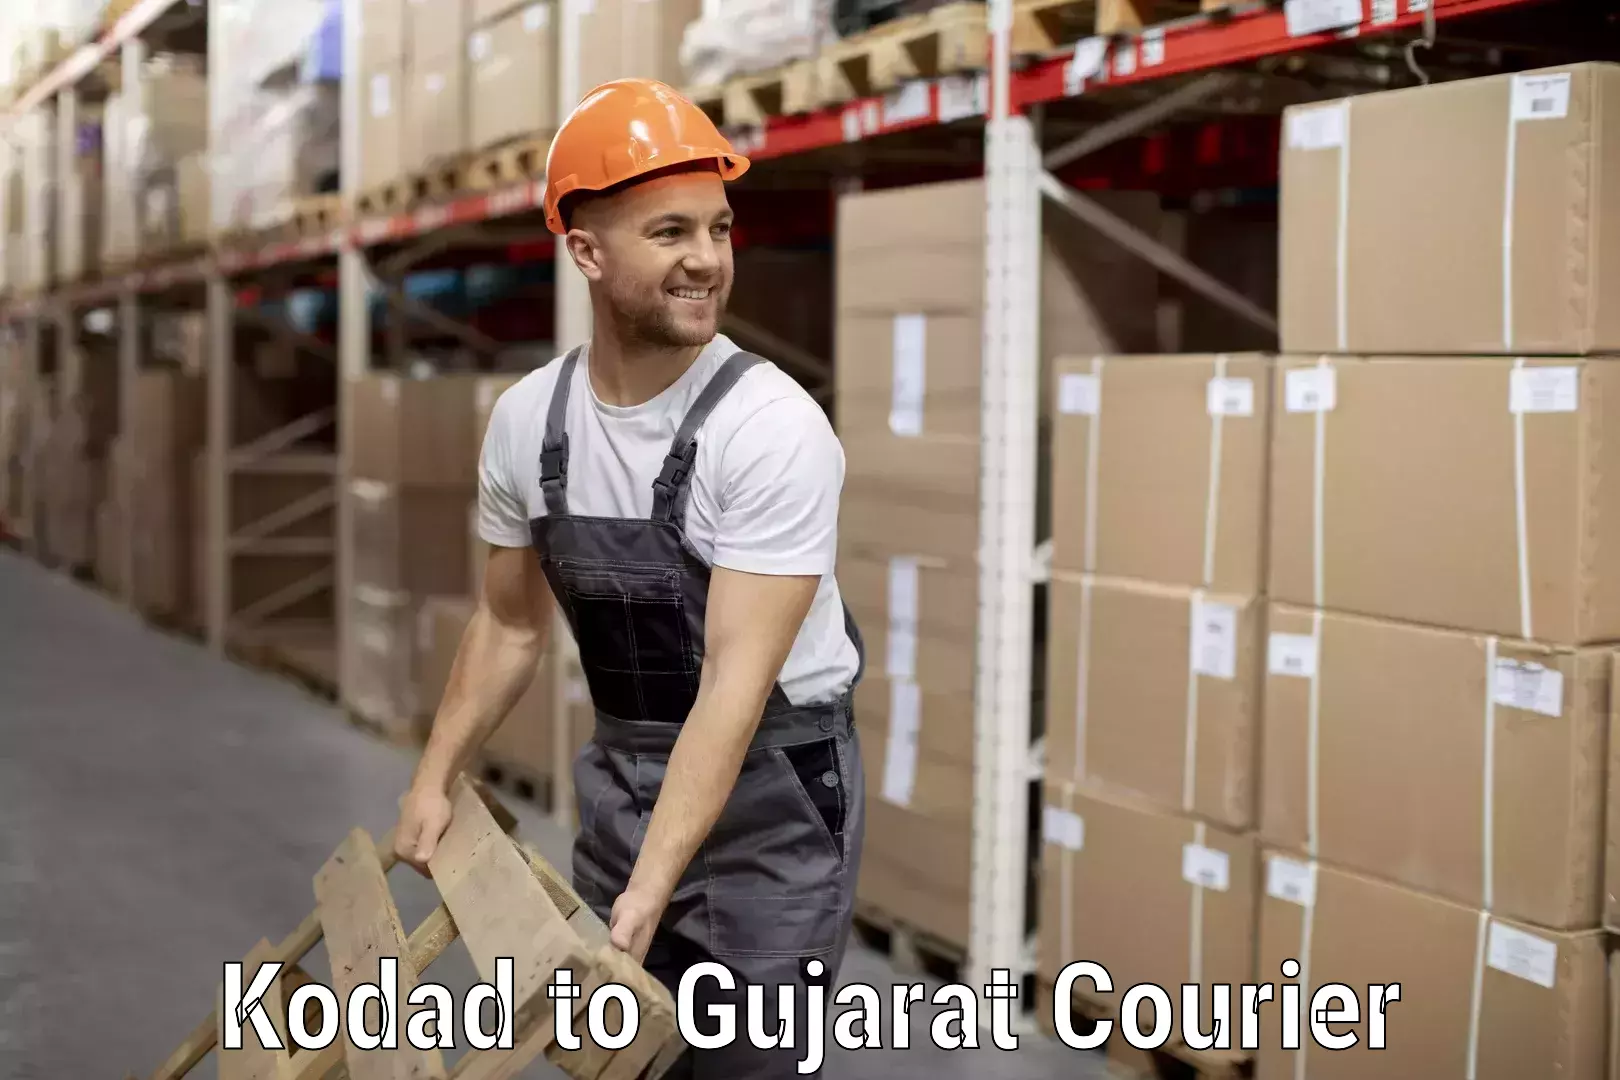 Luggage shipment specialists Kodad to Gujarat